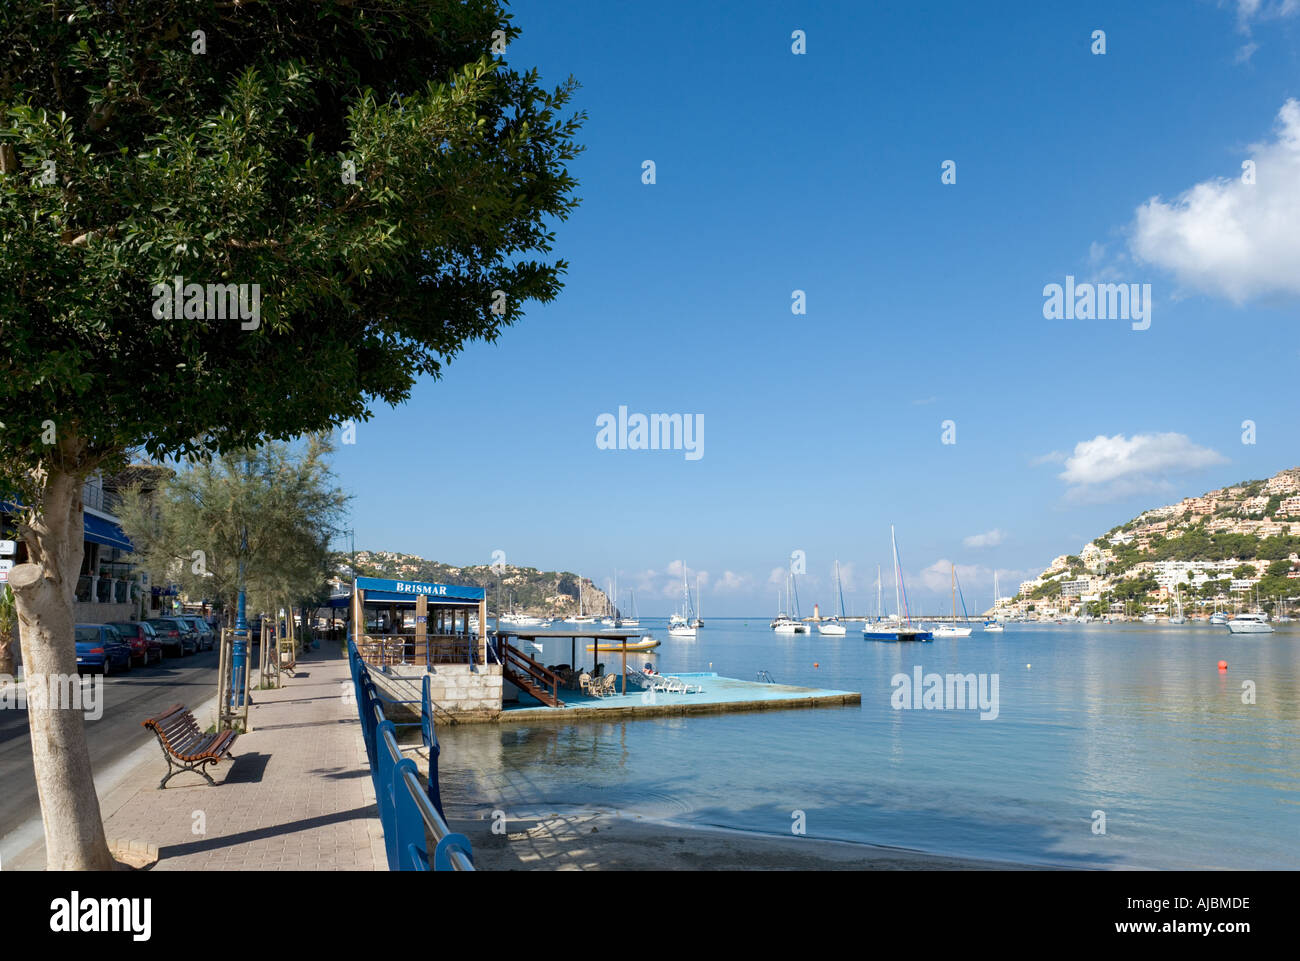 Seafront in Puerto Andratx (Port d'Andratx), Mallorca, Spain Stock Photo